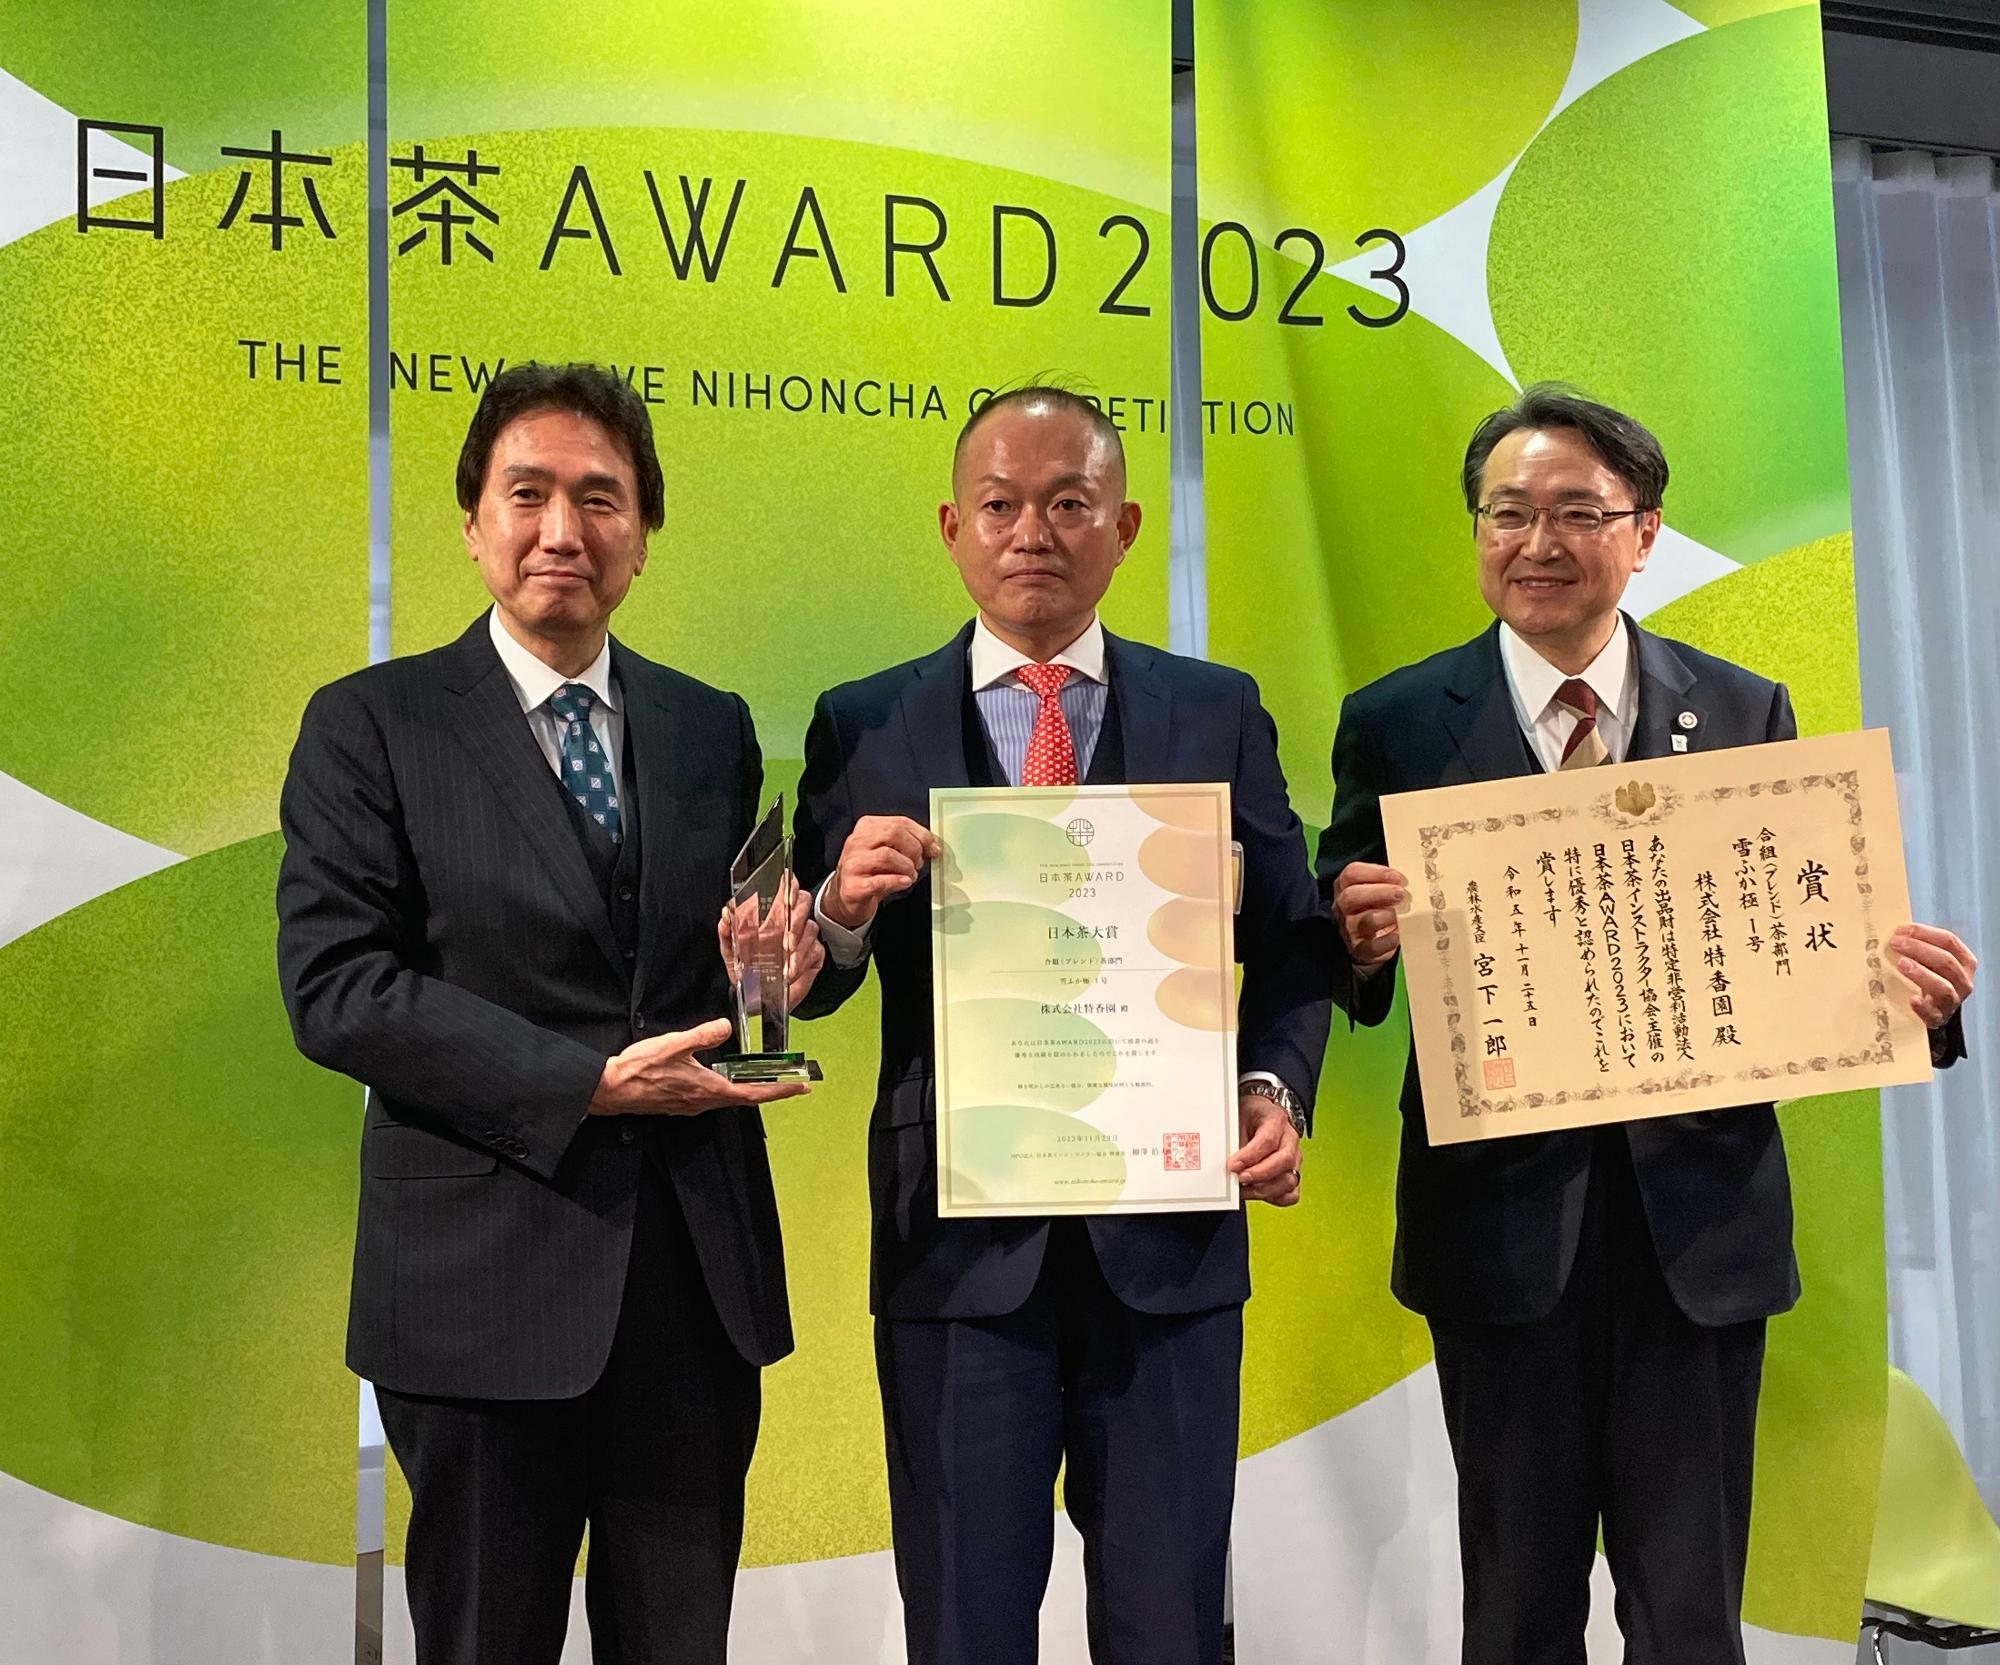 中央が株式会社特香園の桒畑（くわはた）様、右が農林水産省農産局長の平形様、左がNPO法人日本茶インストラクター協会専務理事の奥村様。日本茶大賞にはトロフィーも授与されます。